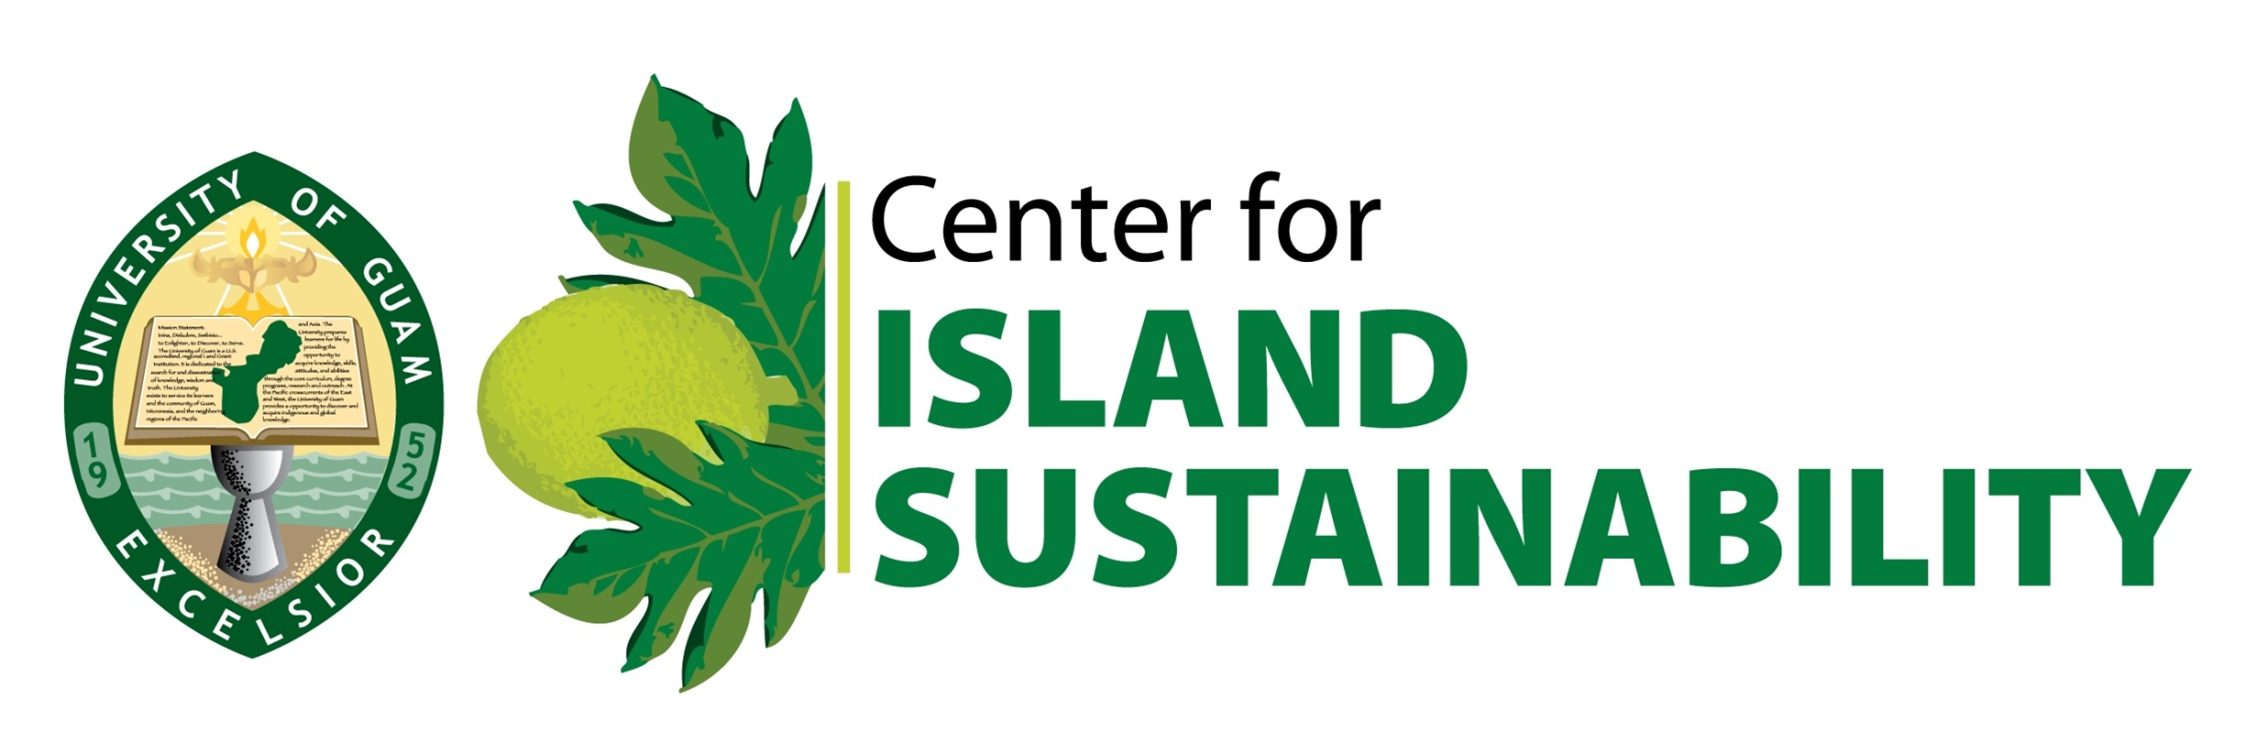 Center for Island Sustainability | University of Guam